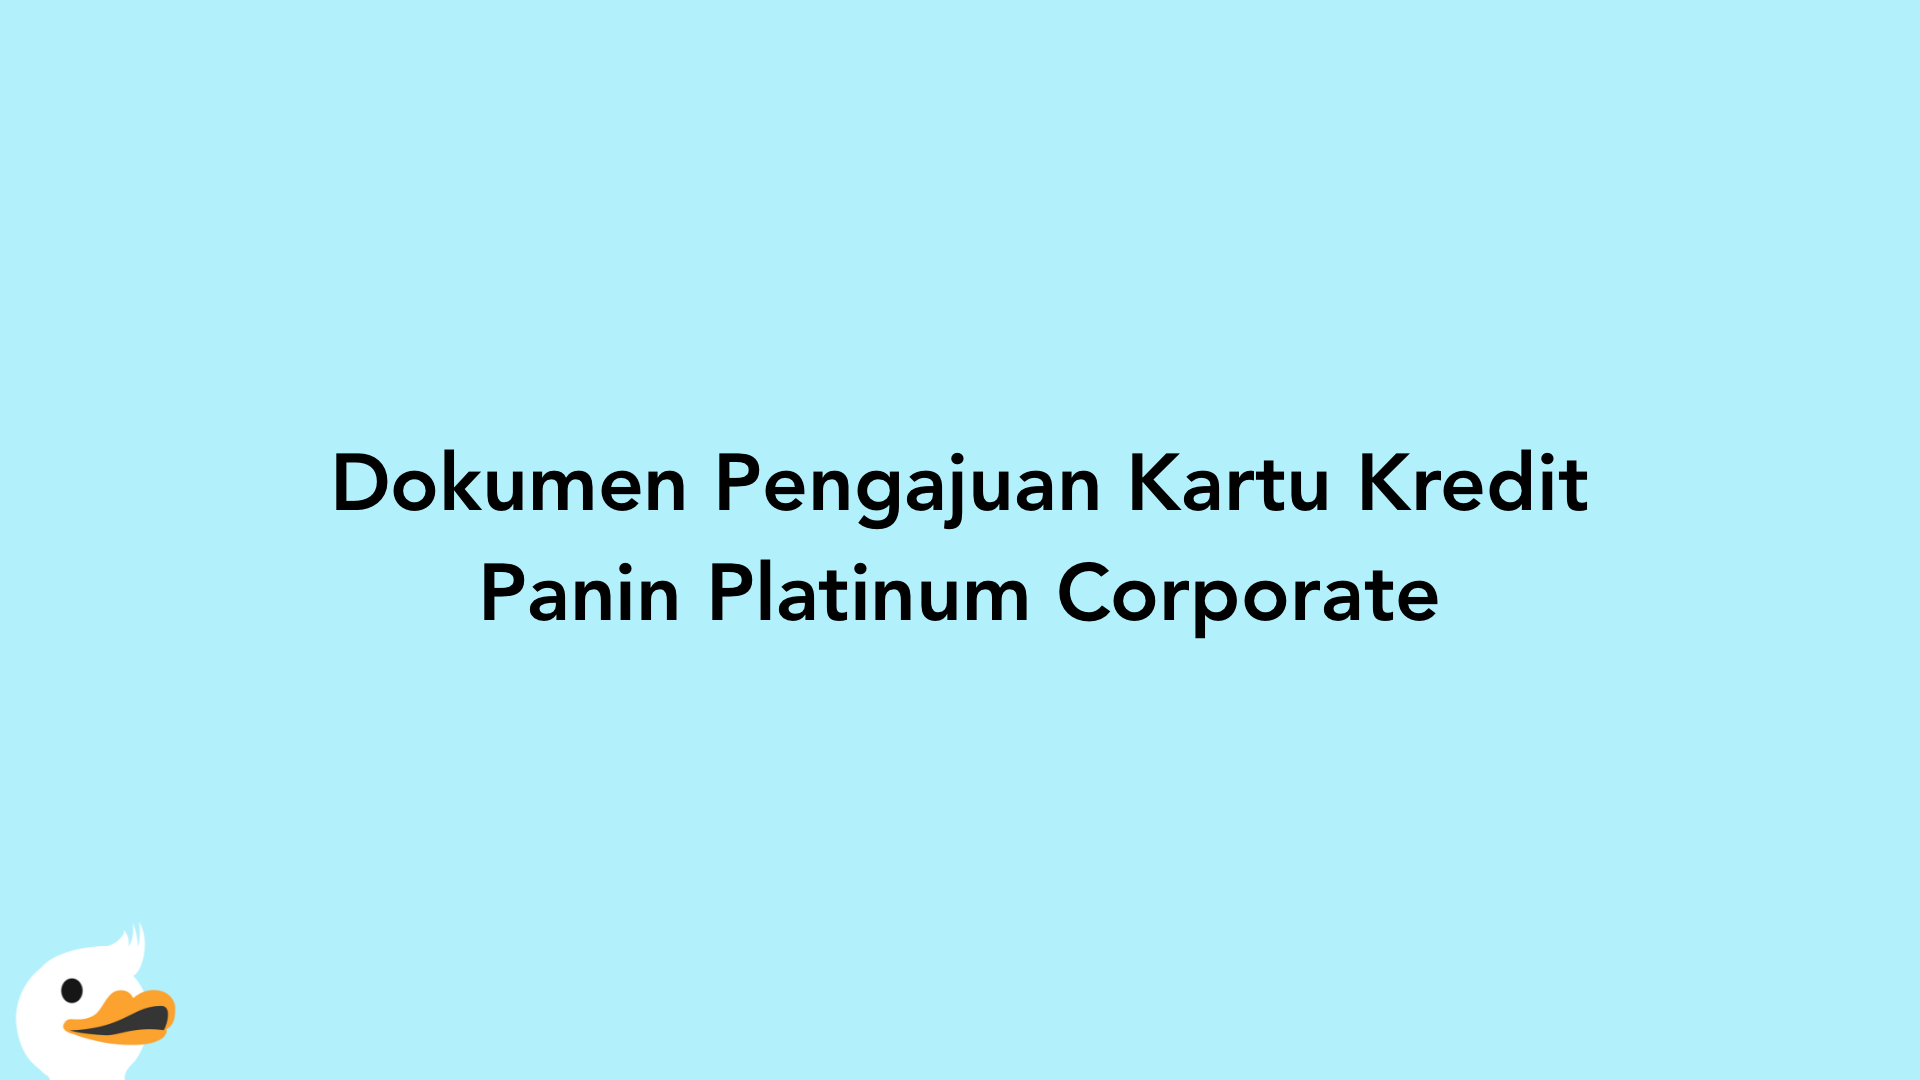 Dokumen Pengajuan Kartu Kredit Panin Platinum Corporate